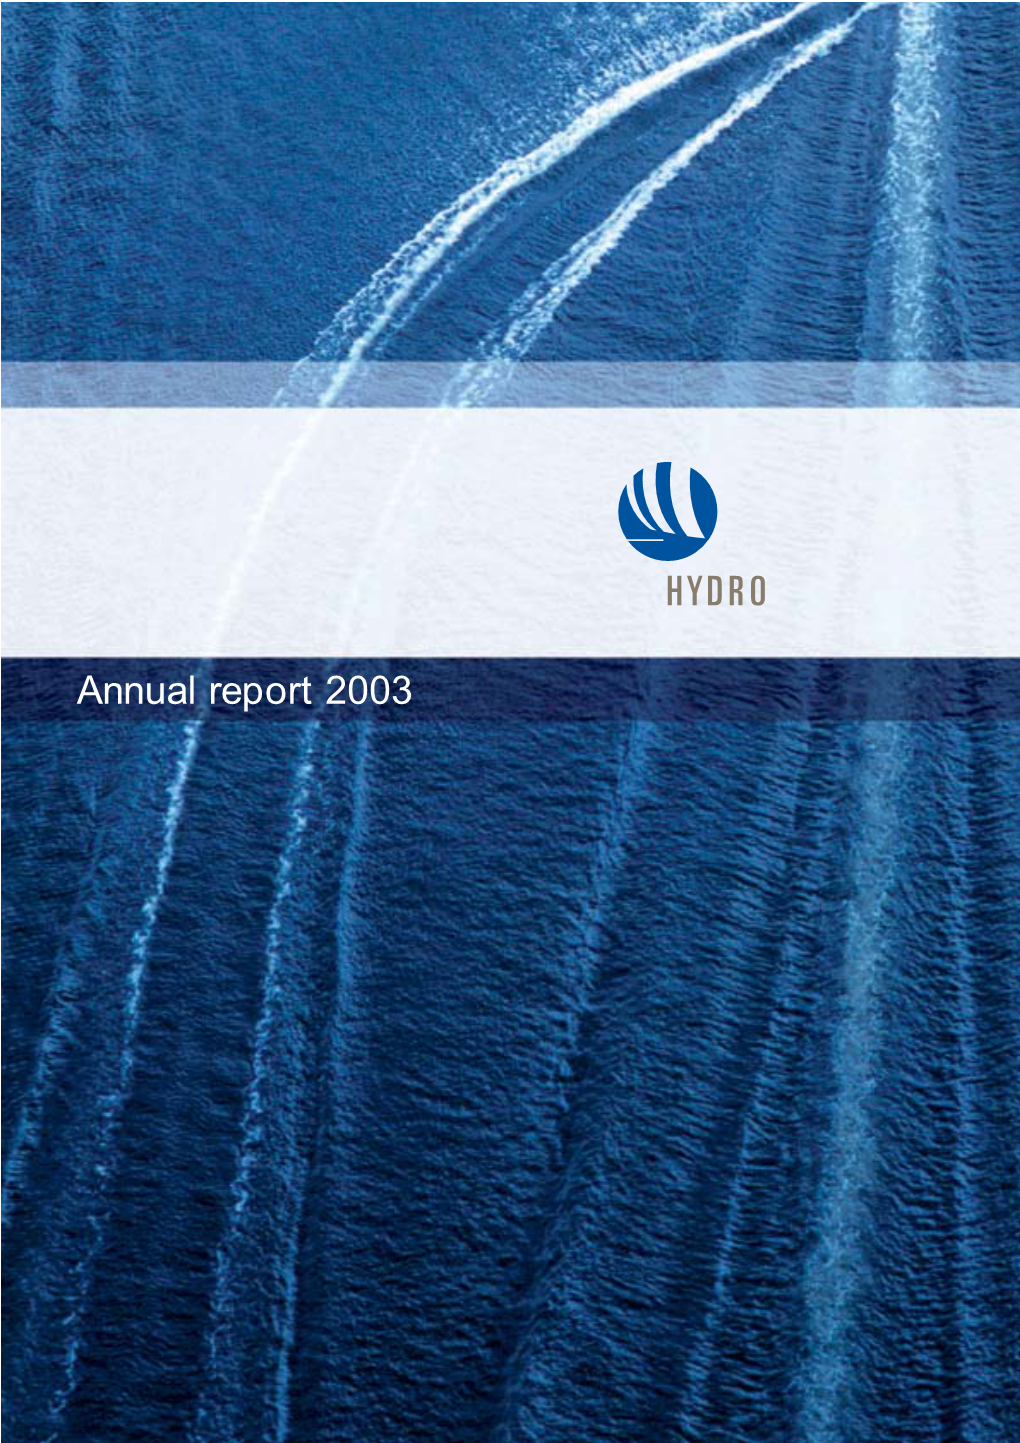 Annual Report 2003 Hydro’S Annual Report 2003